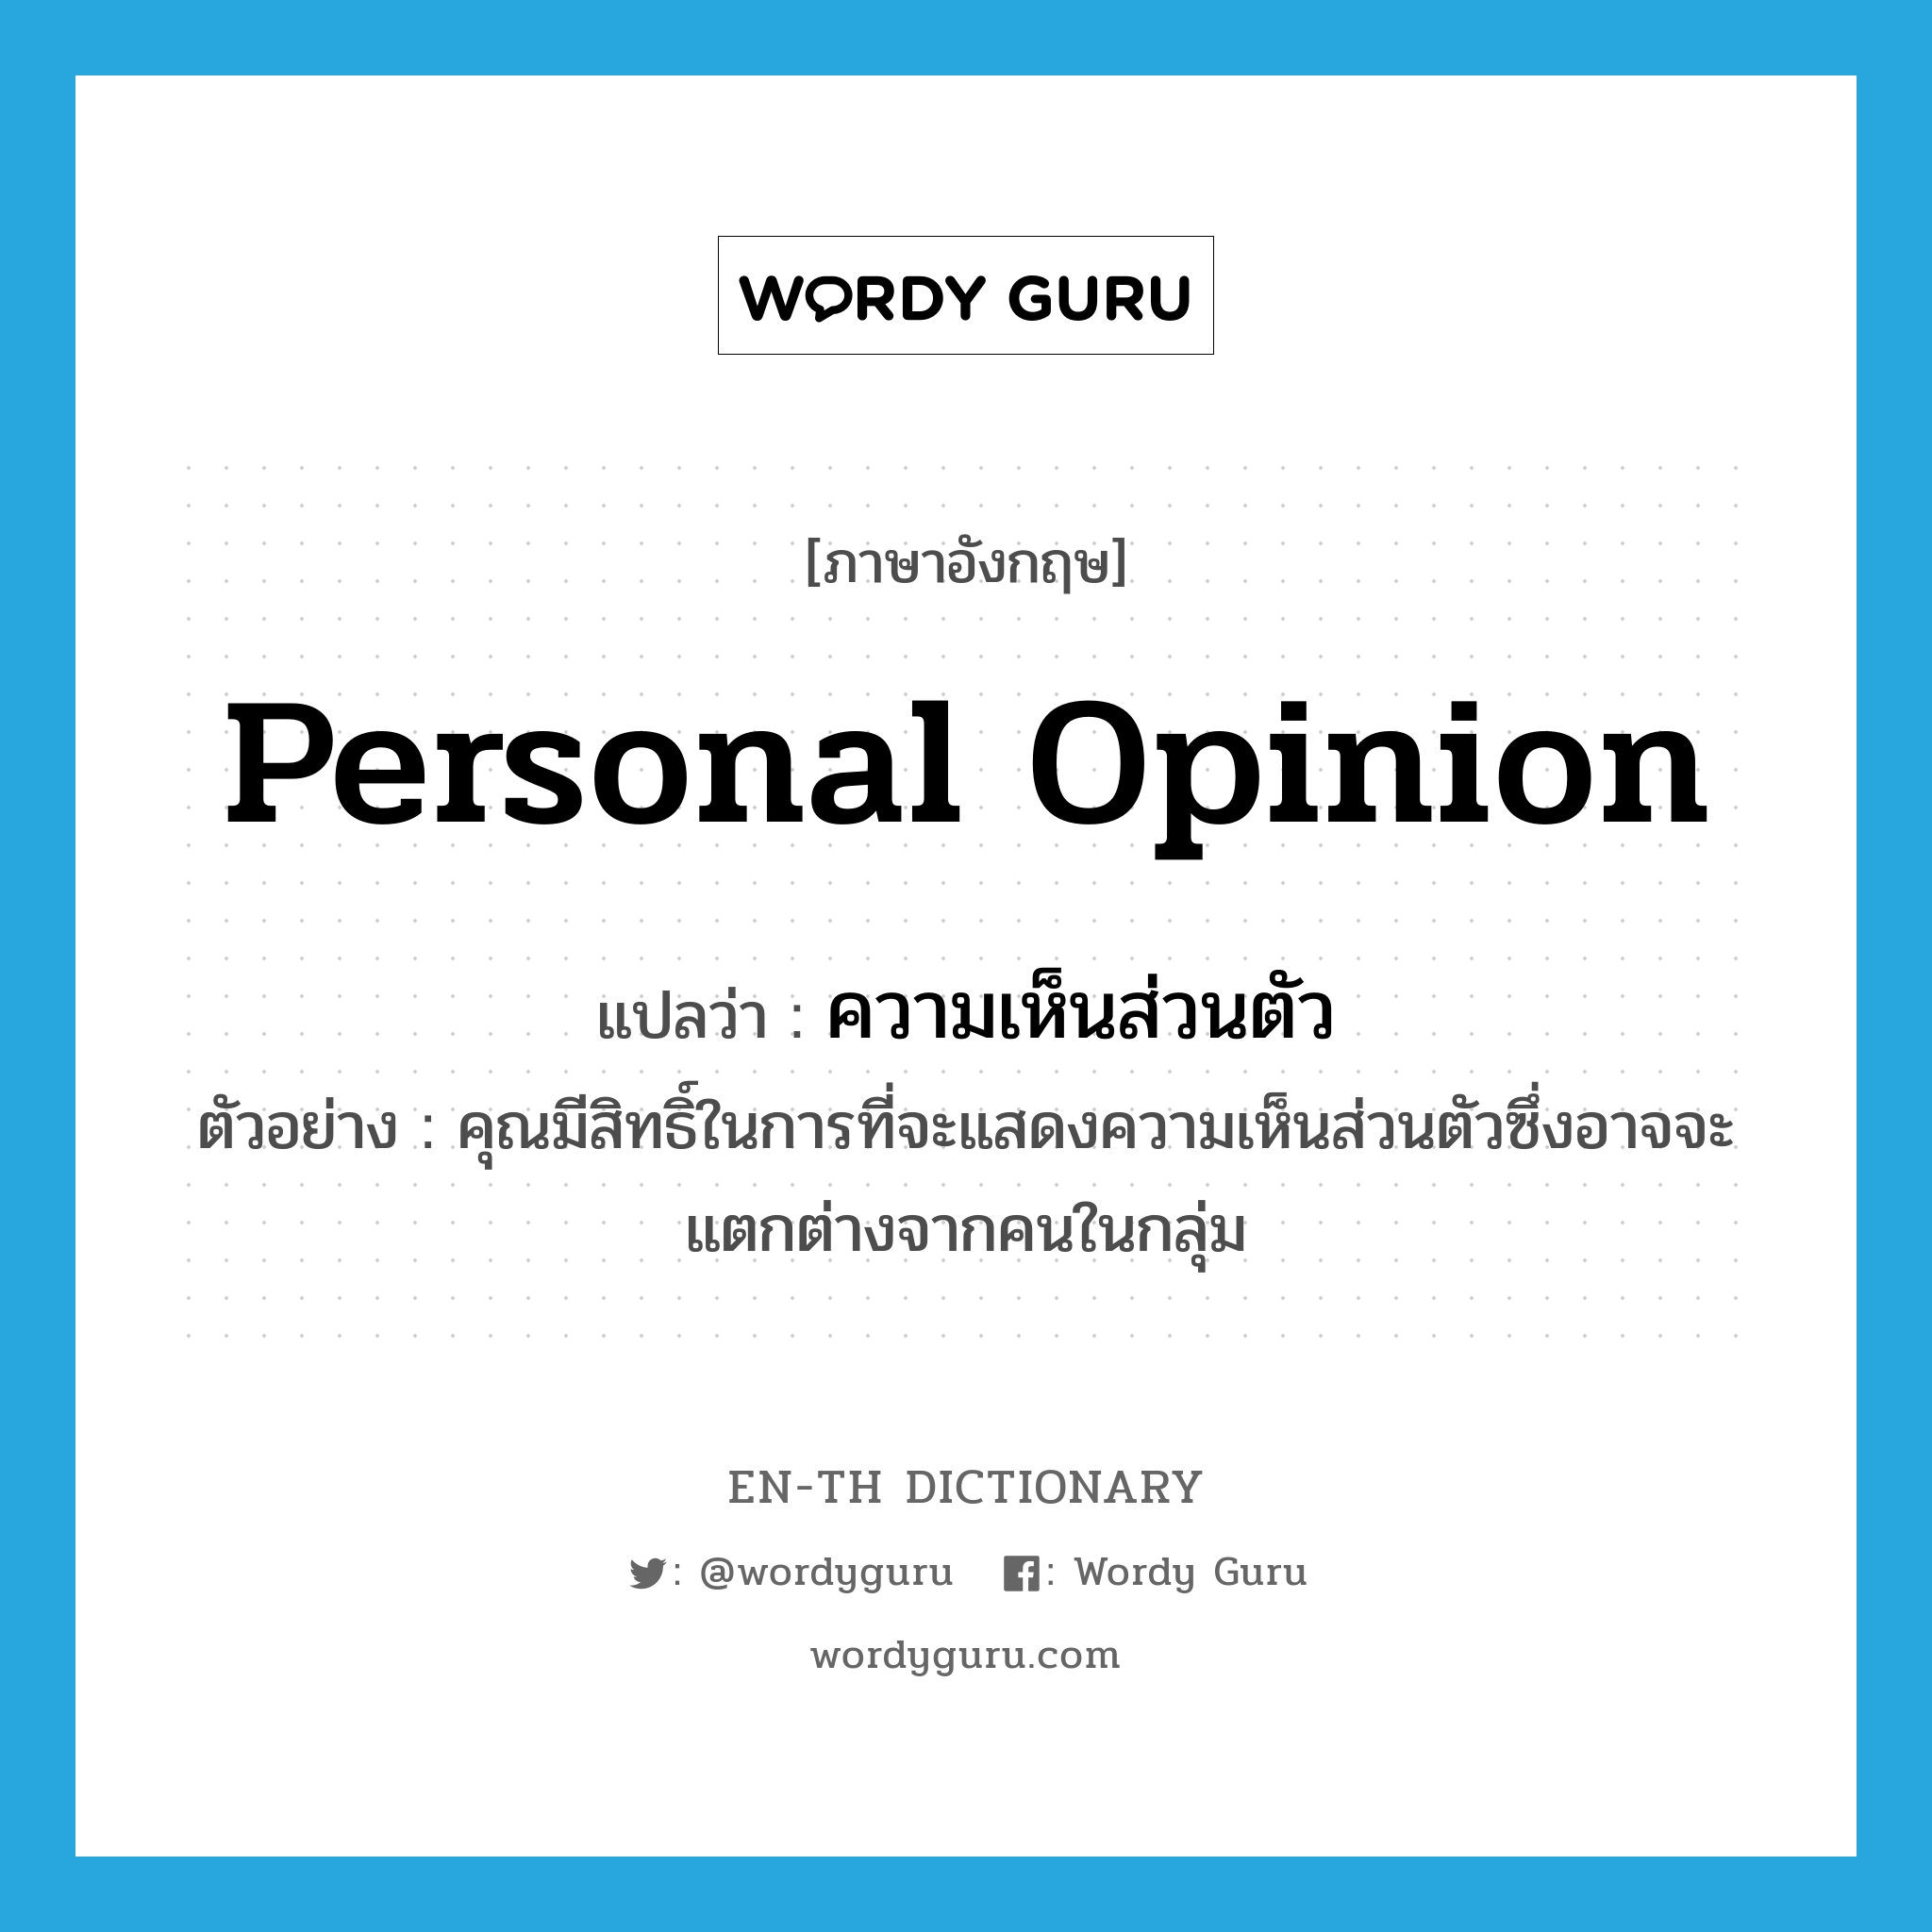 personal opinion แปลว่า?, คำศัพท์ภาษาอังกฤษ personal opinion แปลว่า ความเห็นส่วนตัว ประเภท N ตัวอย่าง คุณมีสิทธิ์ในการที่จะแสดงความเห็นส่วนตัวซึ่งอาจจะแตกต่างจากคนในกลุ่ม หมวด N